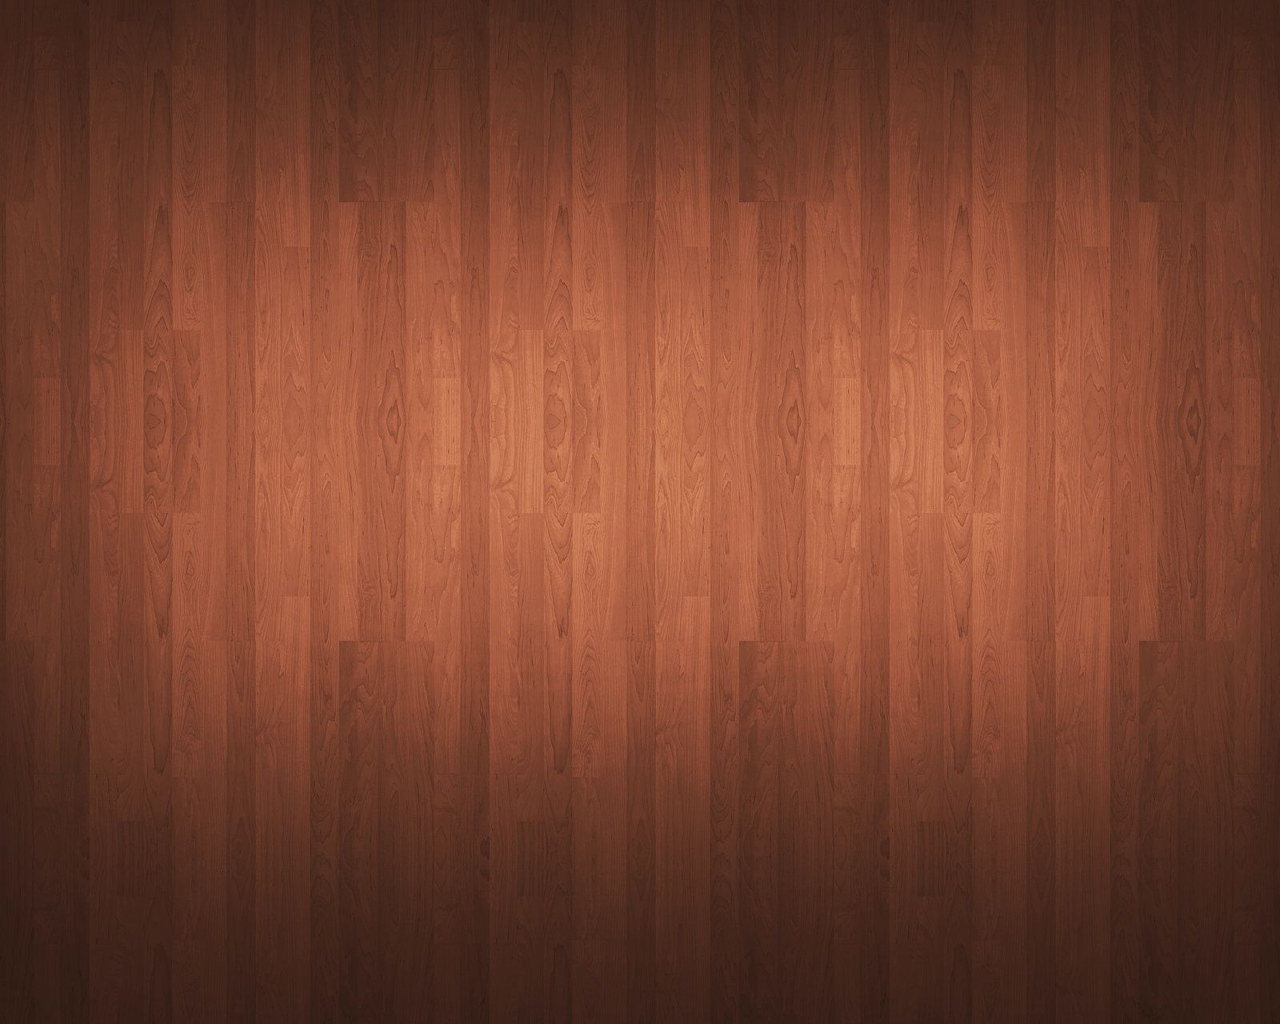 Rustic Wood Wallpaper Picswallpaper